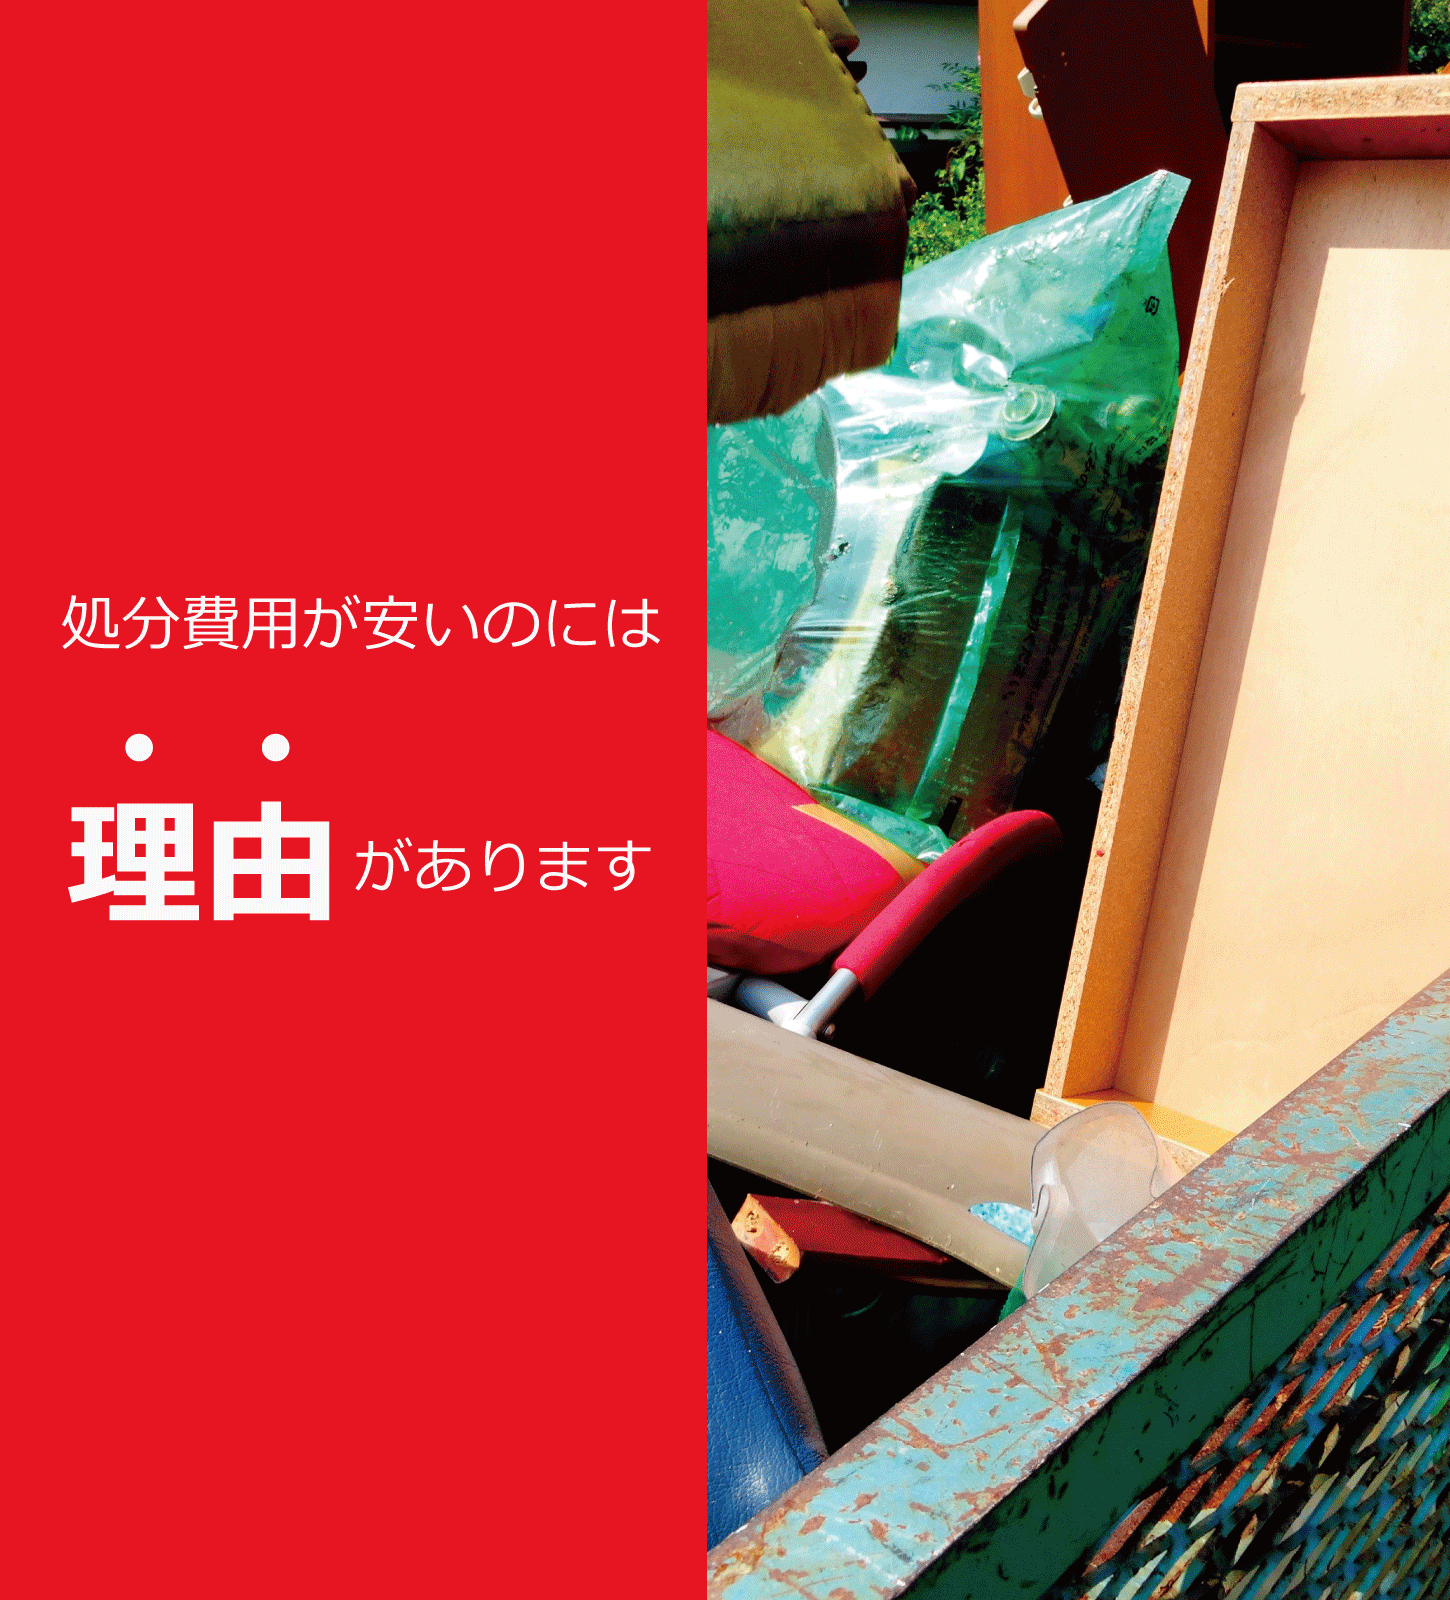 神戸市・兵庫県で不用品処分や不用品回収を承ります